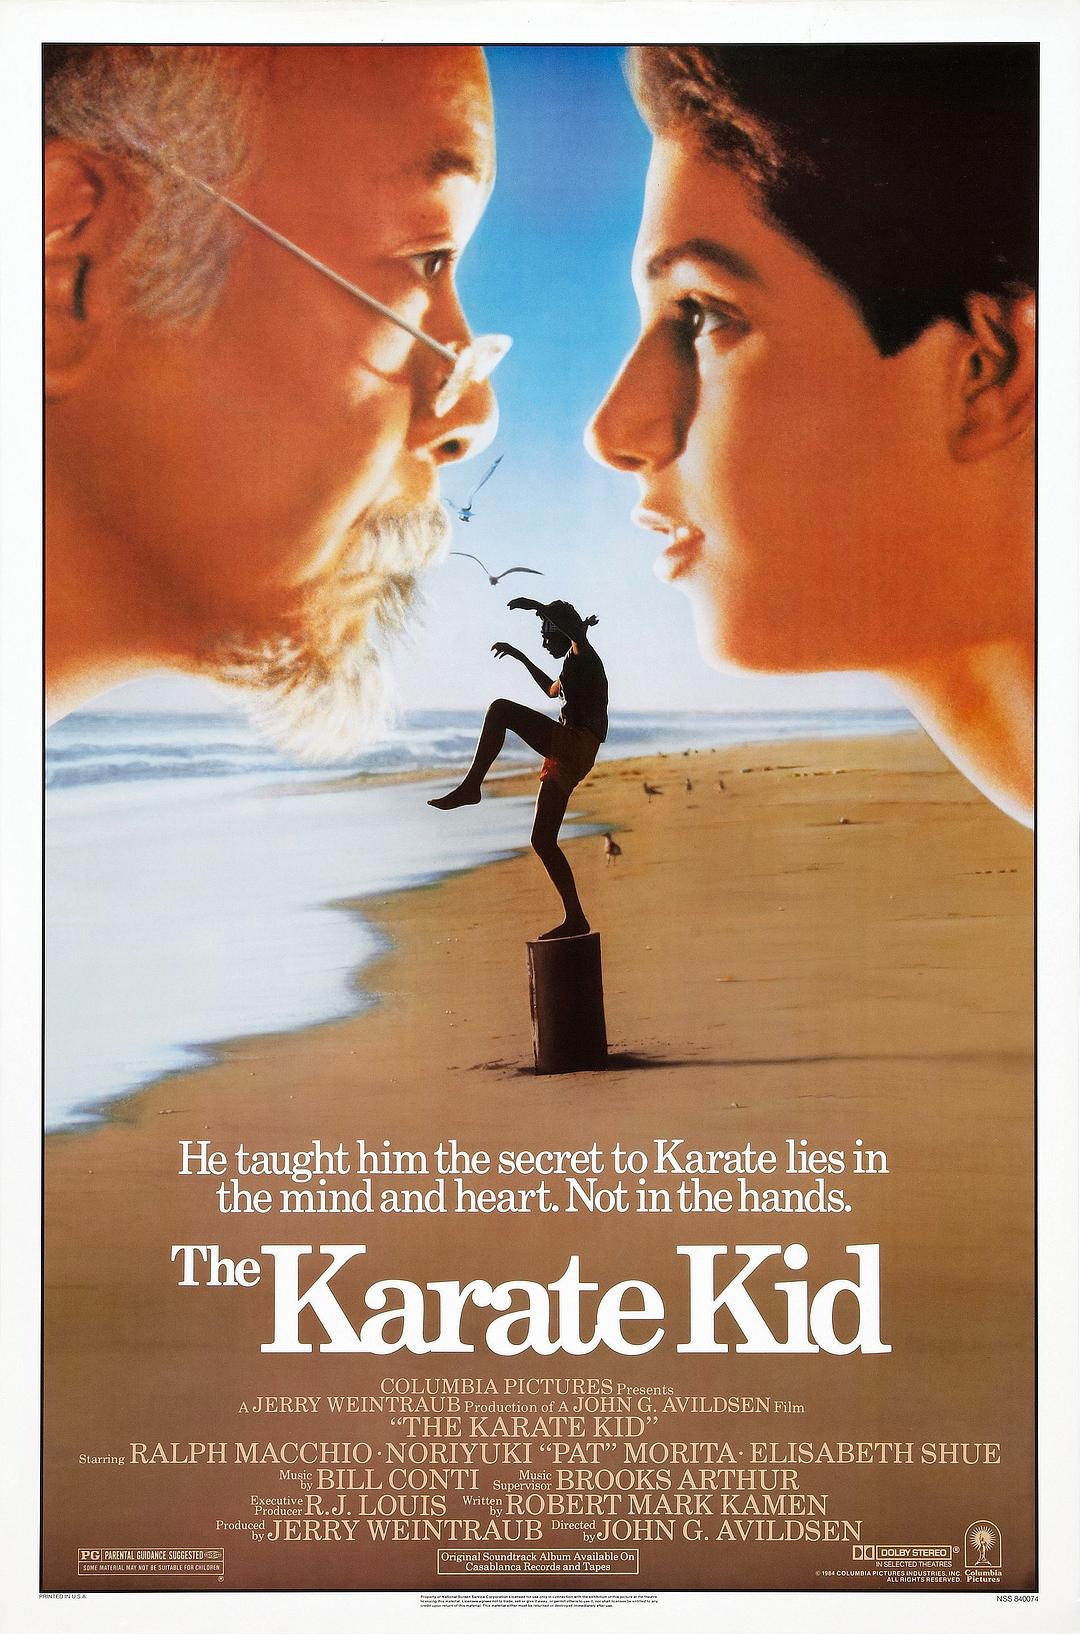 龙威小子/小子难缠 The.Karate.Kid.1984.2160p.BluRay.x264.8bit.SDR.DTS-HD.MA.TrueHD.7.1.Atmos-SWTYBLZ 47.32GB-1.png